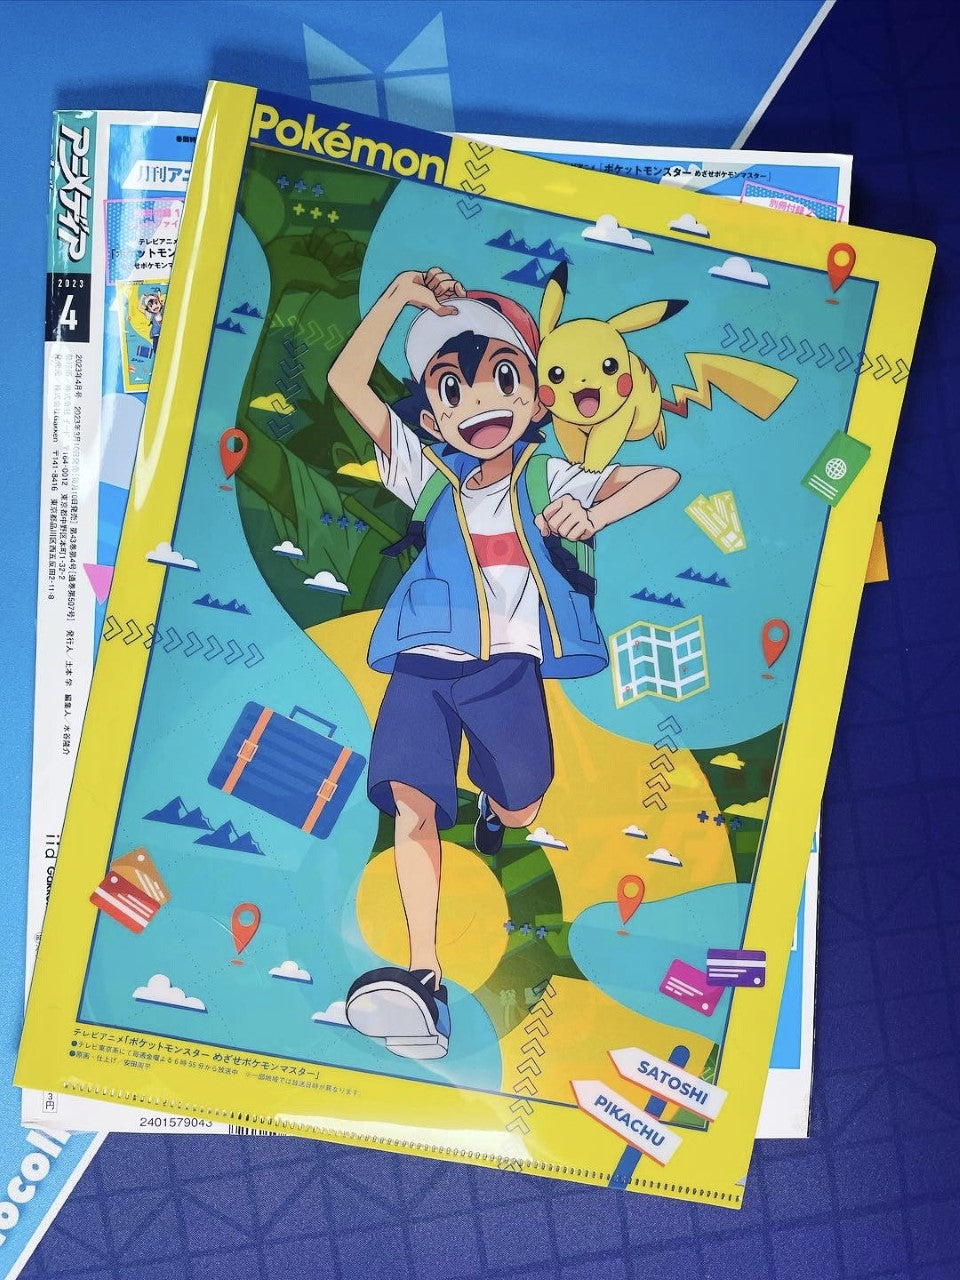 Japanese Anime Magazine Animedia April 2023 + Pokemon file NieR:Automata  Booklet